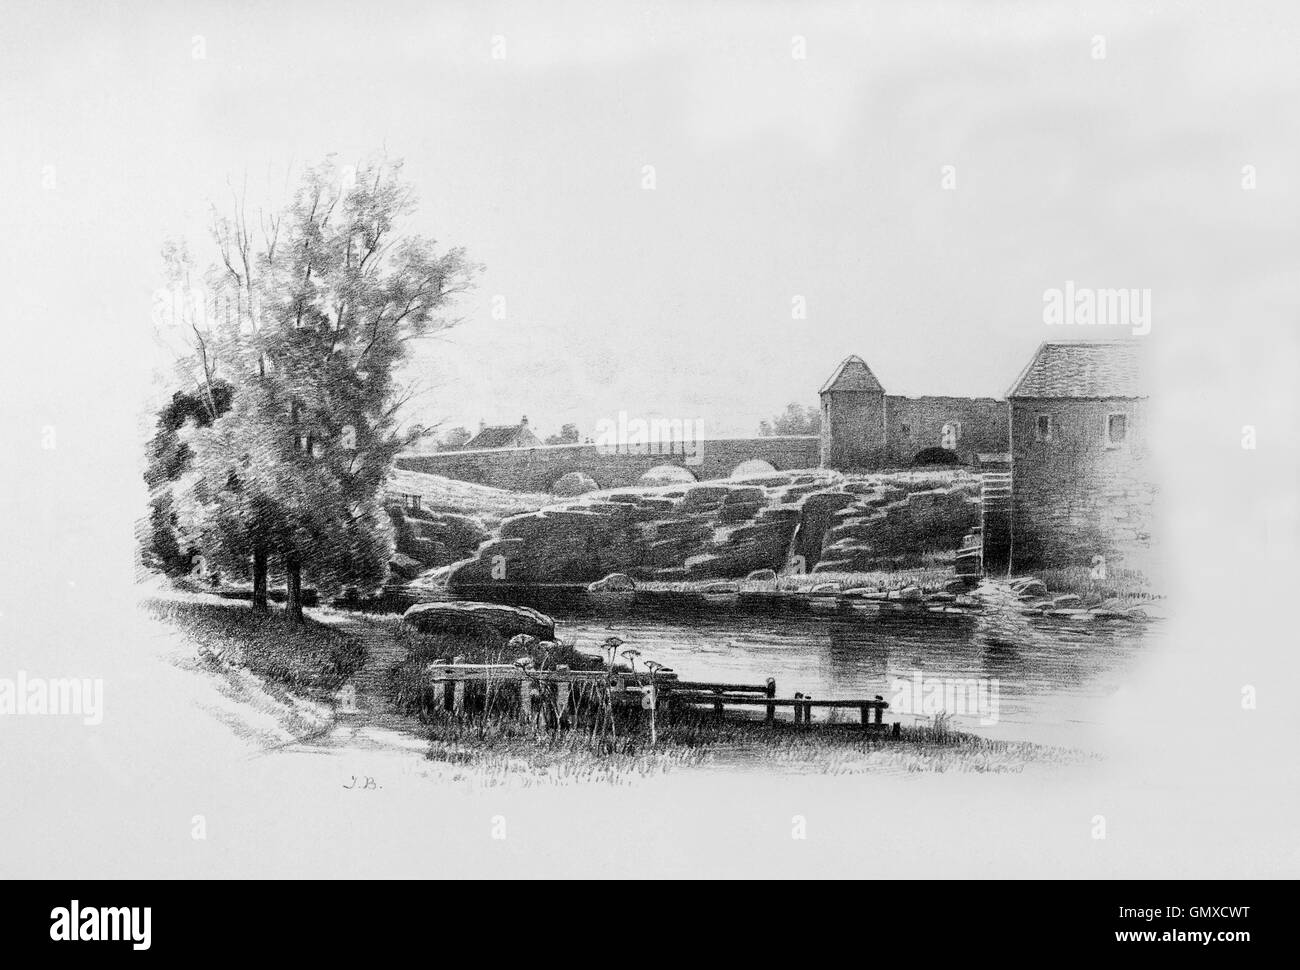 Preston Mill è un mulino ad acqua sul fiume Tyne sul bordo orientale del East Linton in East Lothian, Scozia, Regno Unito. (Da 'Sketches in East Lothian' da Thomas B. Blacklock...1892) Foto Stock